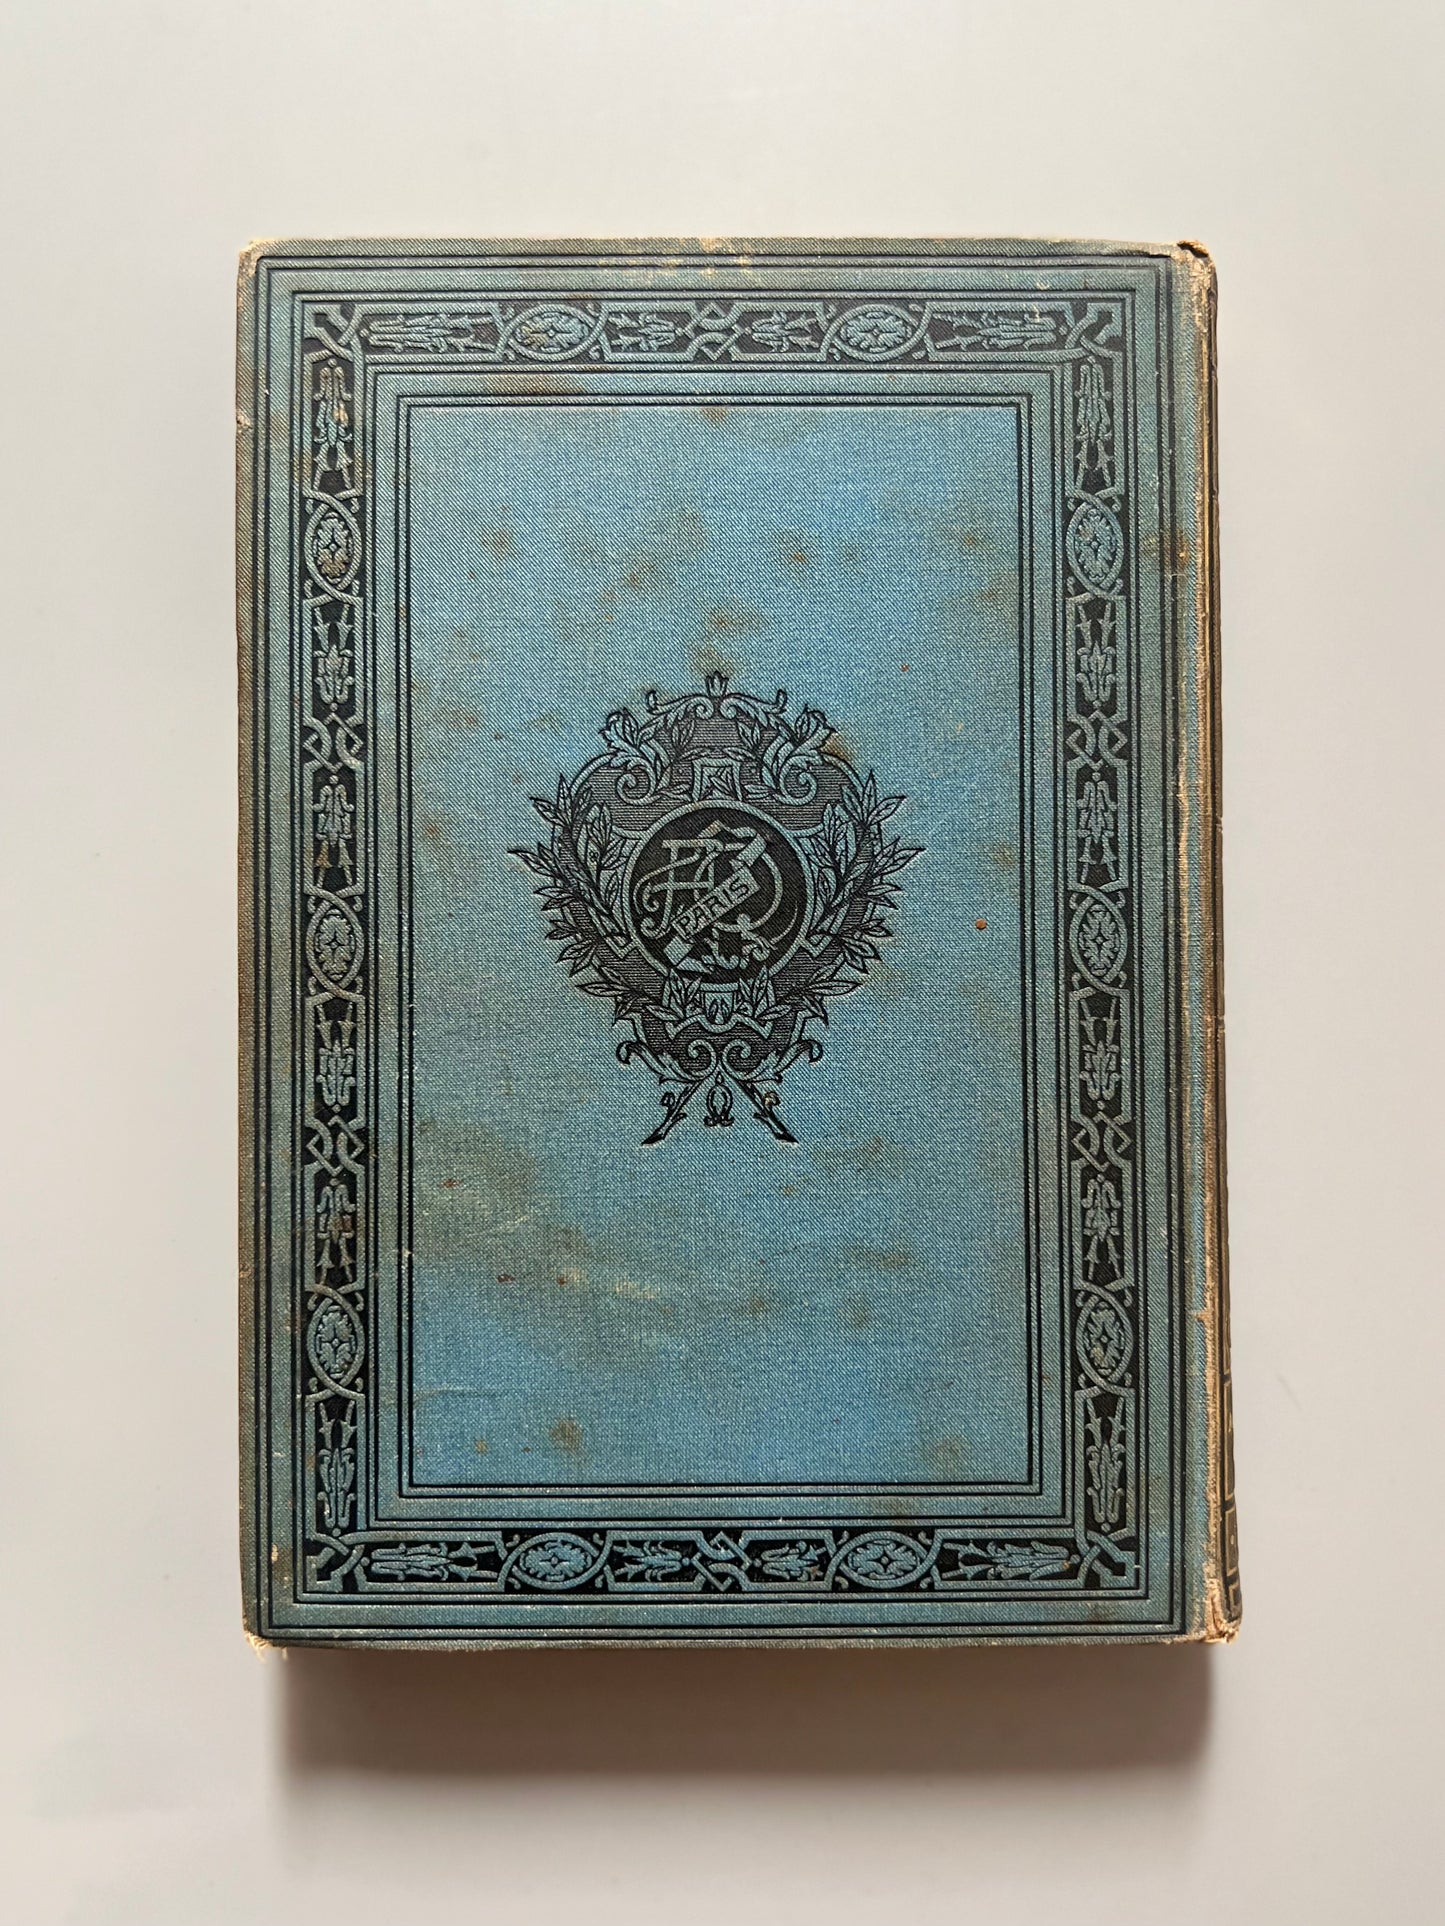 Histoire de Germaine, A. Quantin - A. Quantin imprimeur-éditeur, ca. 1890